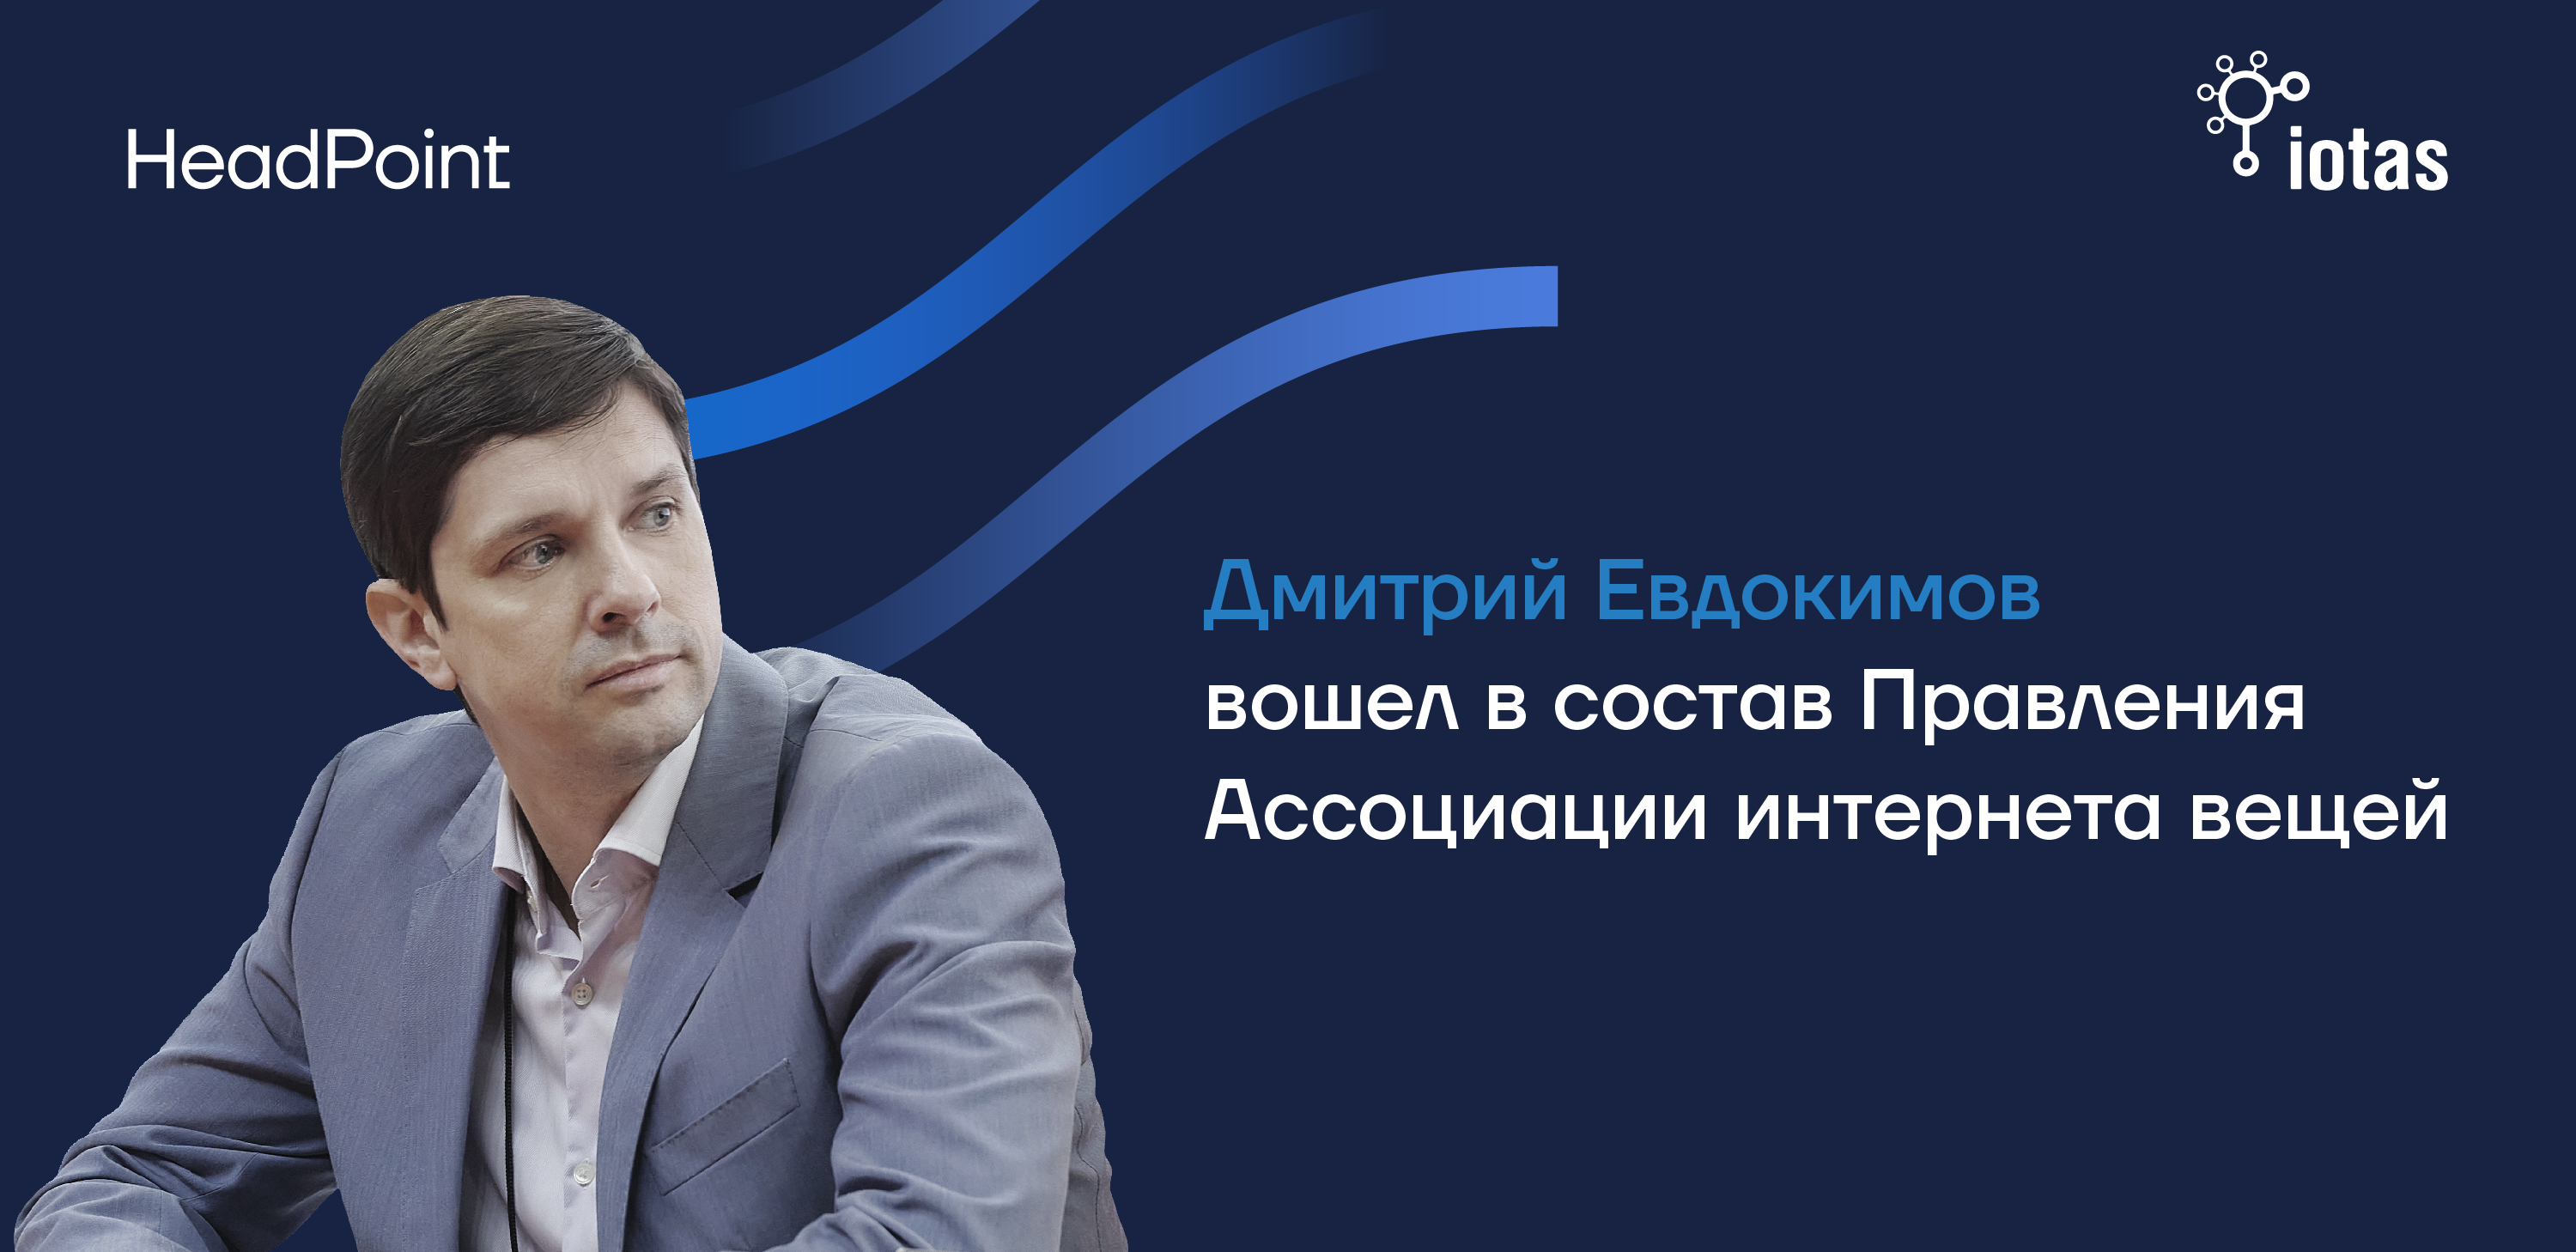 Дмитрий Евдокимов вошел в состав Правления Ассоциации интернета вещей